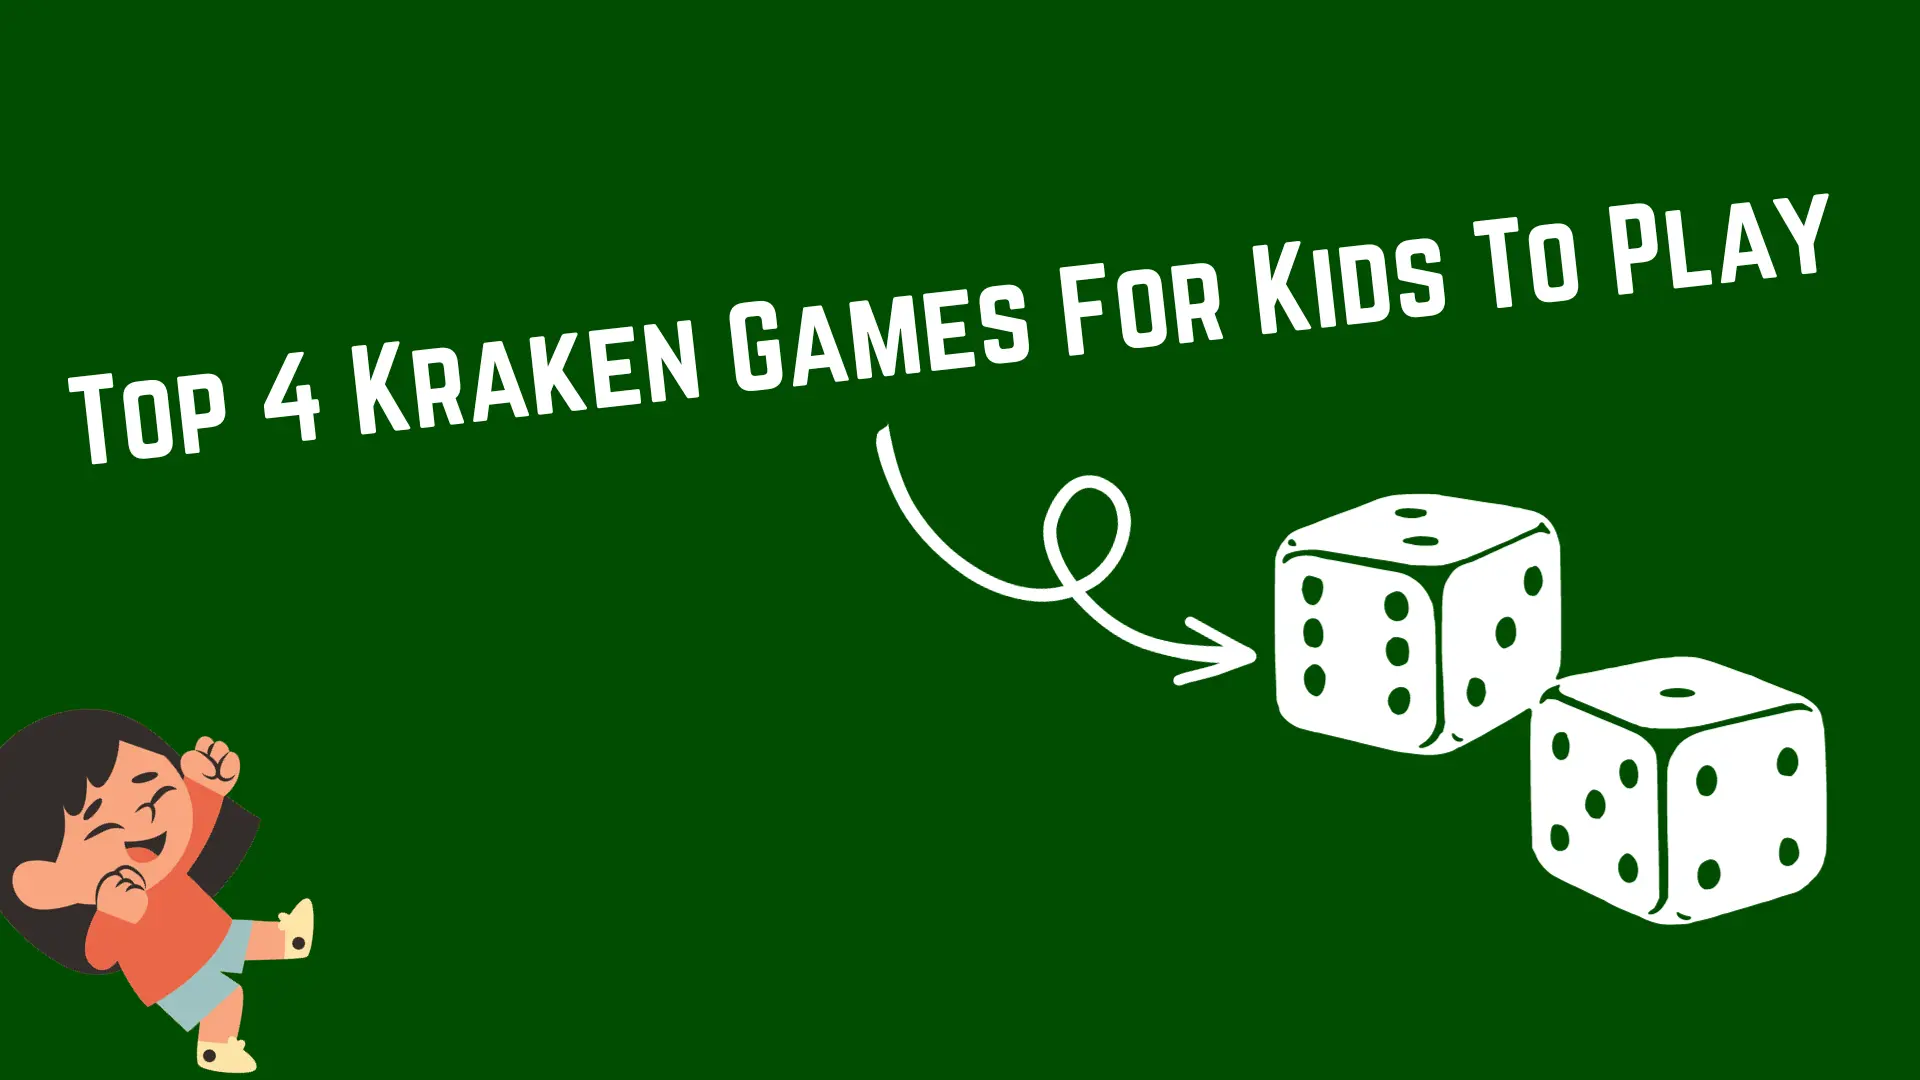 Kraken Games For Kids